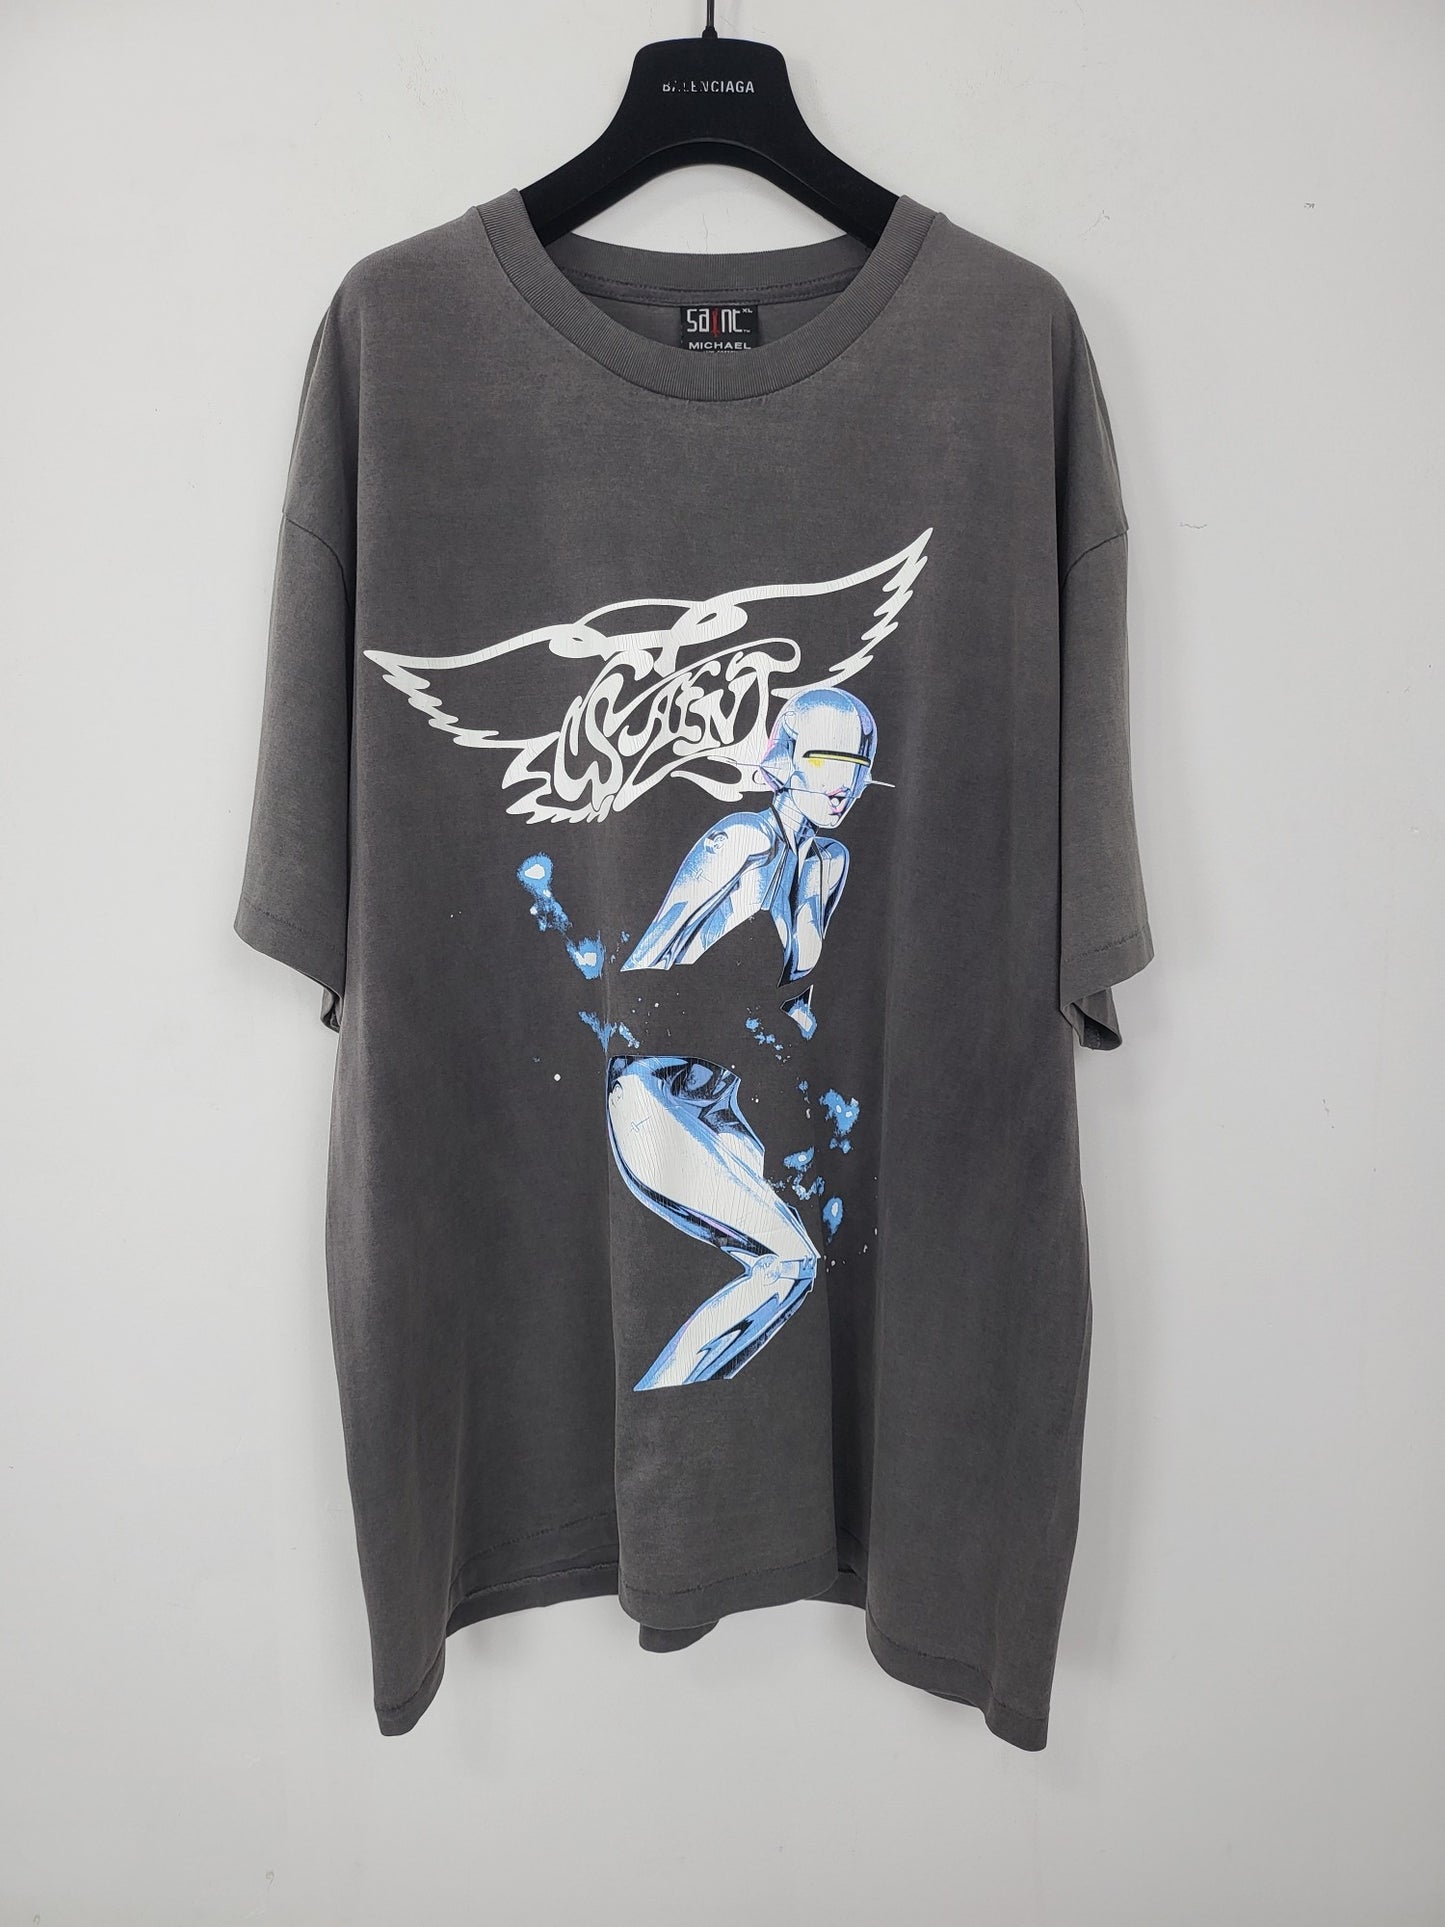 GTR / 세인트소라야마 프라이드 티셔츠